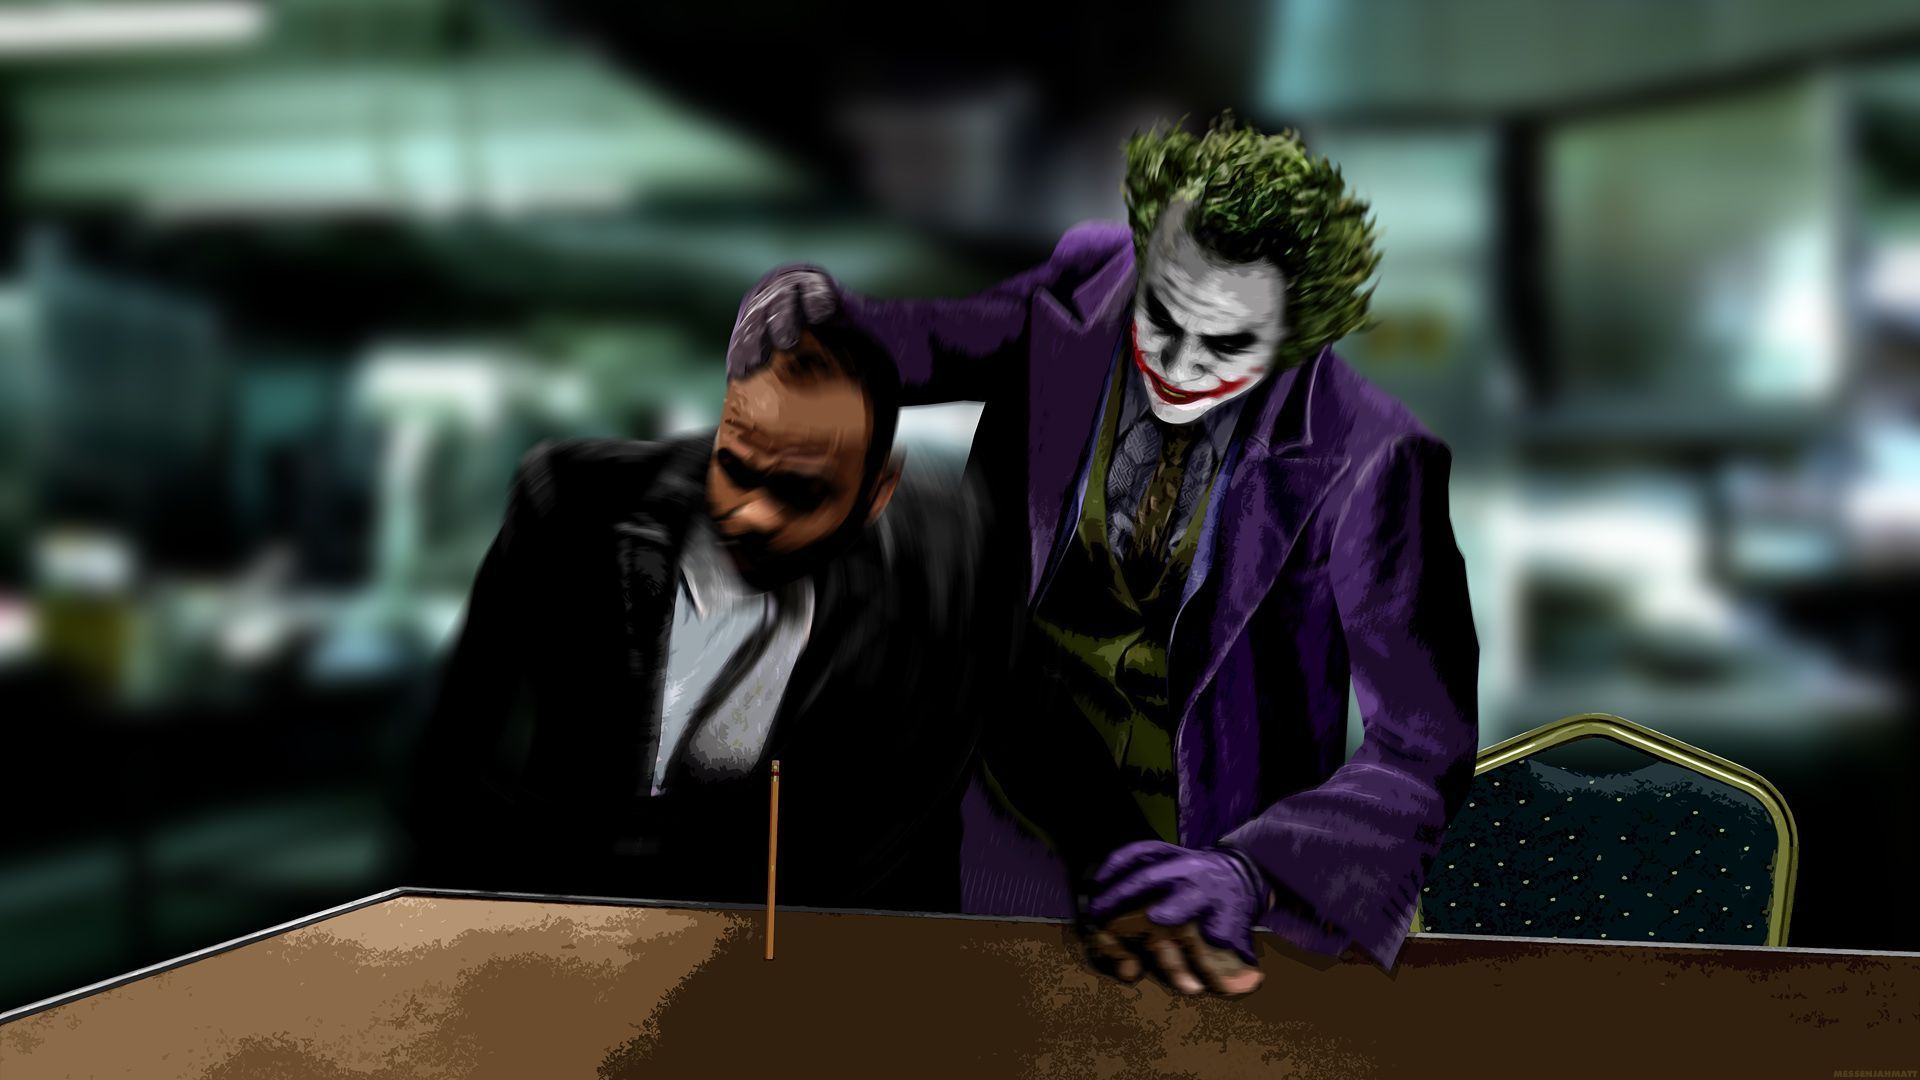 Joker Movie Hd Wallpaper For Mobile